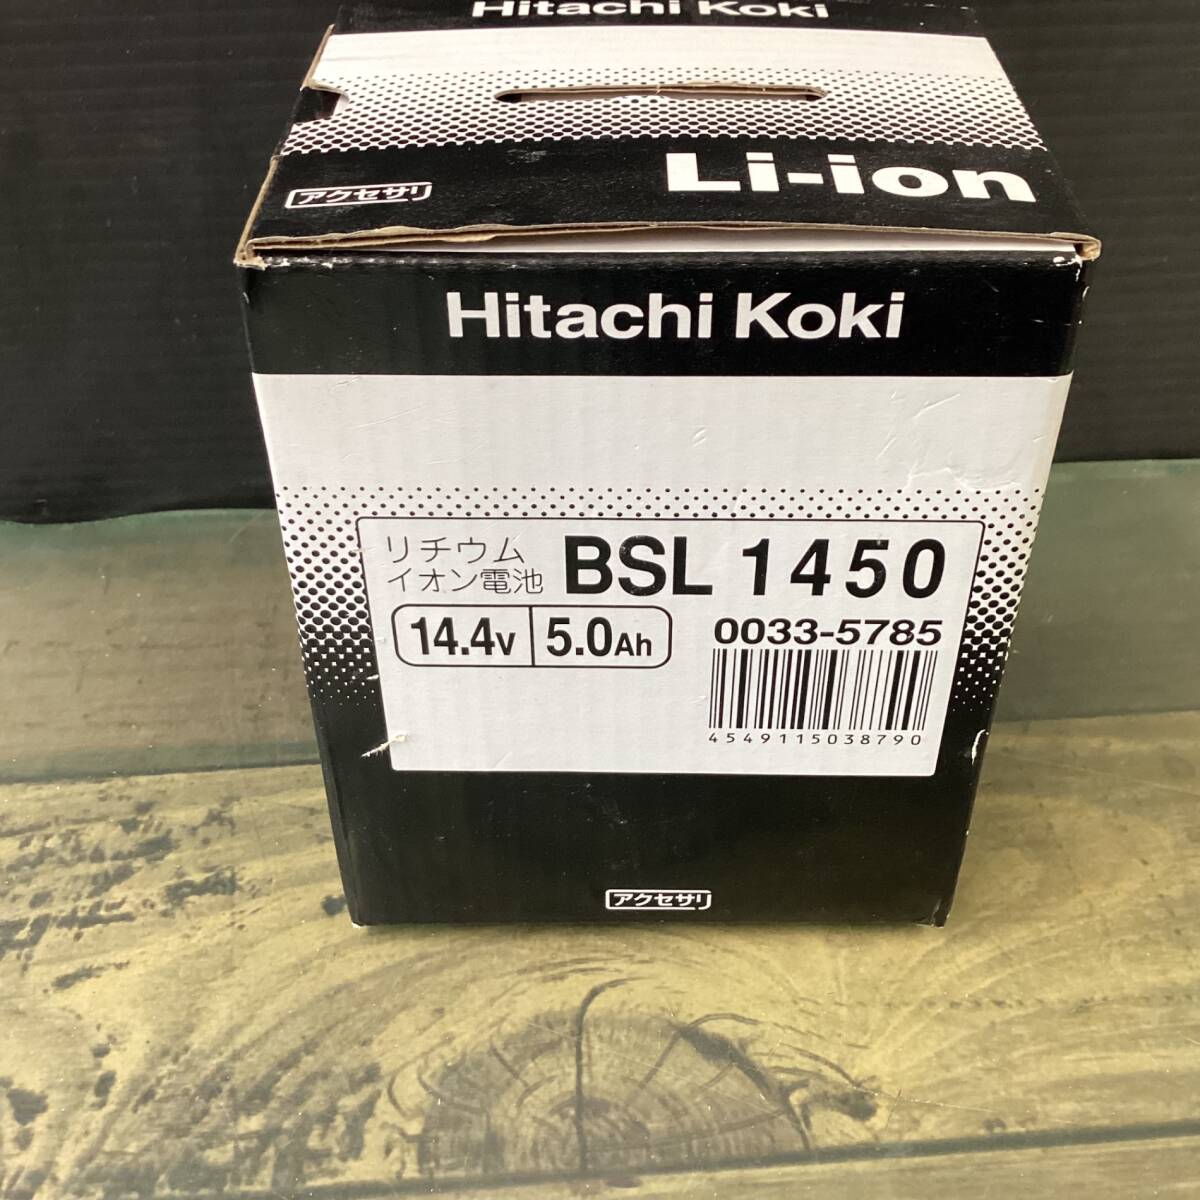 [ не использовался хранение товар ] высокий ko-ki(HIKOKI * старый : Hitachi Koki ) lithium ион аккумулятор 14.4V/5.0Ah BSL1450[ наложенный платеж OK!!]